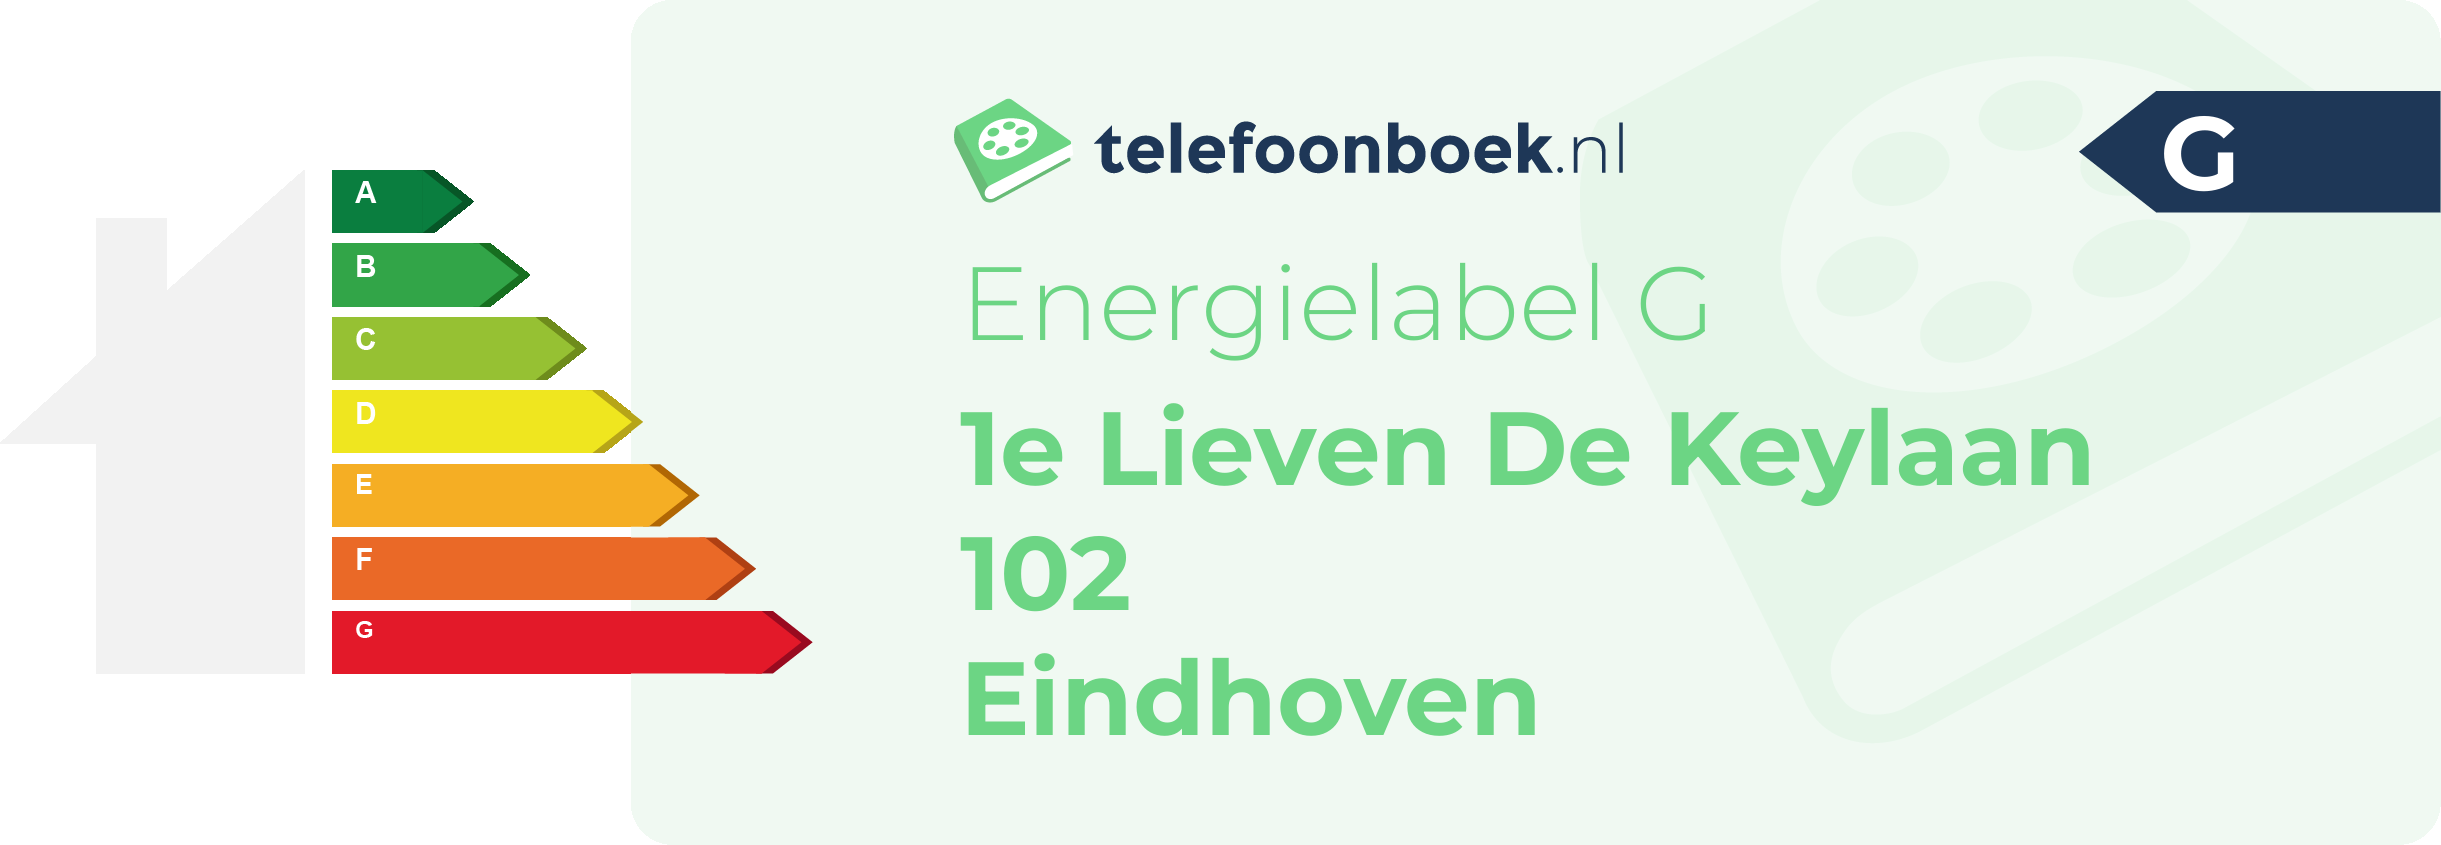 Energielabel 1e Lieven De Keylaan 102 Eindhoven